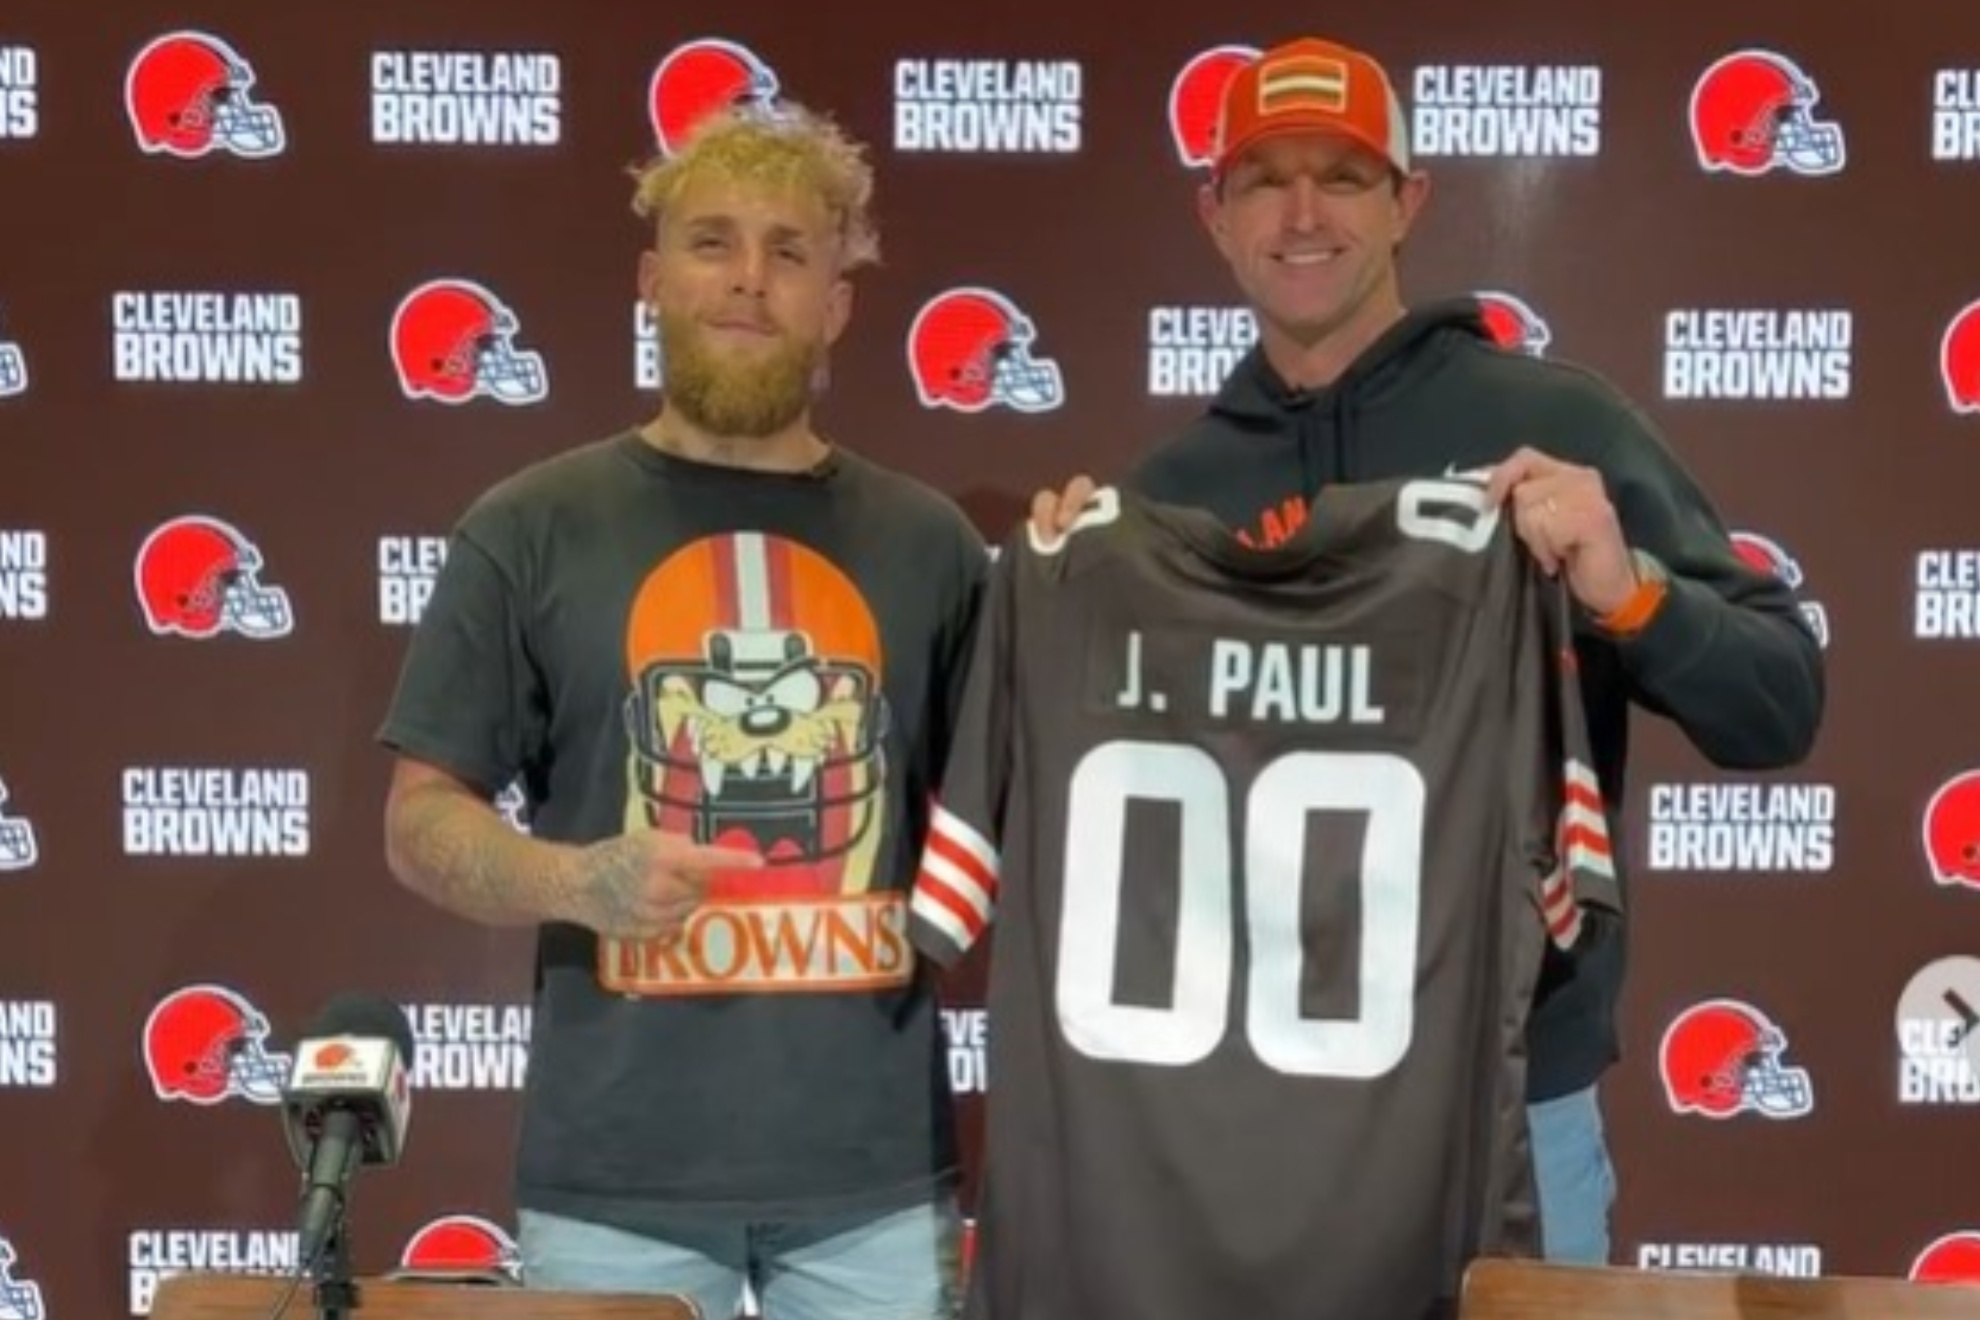 Jake Paul has been a lifelong Cleveland Browns fan